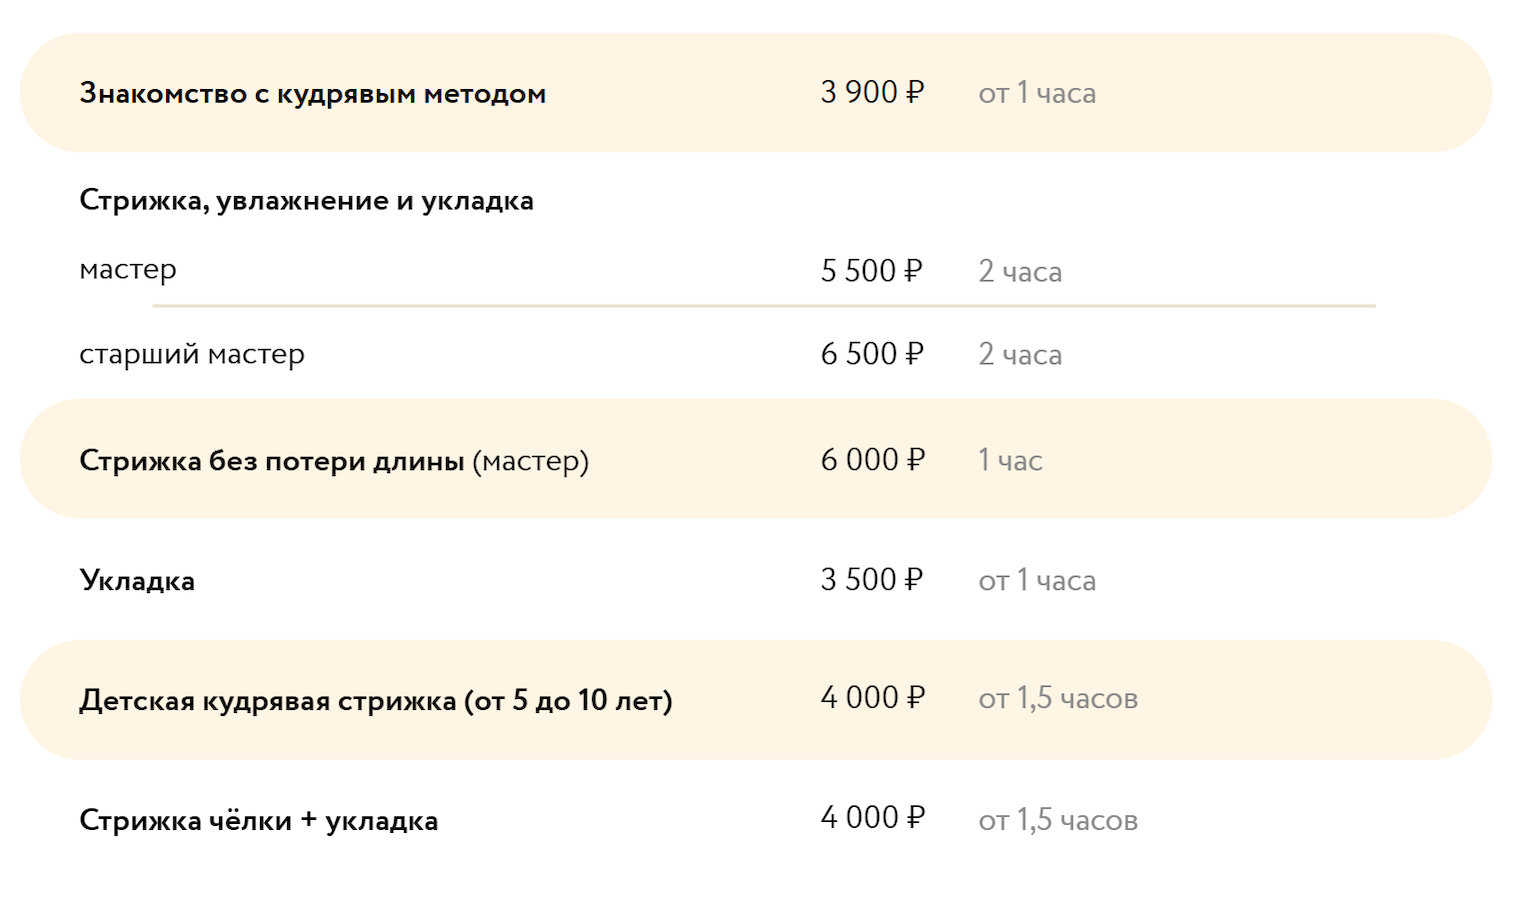 Прайс на услуги в салоне «Так и ходи». Источник: takihodi.ru